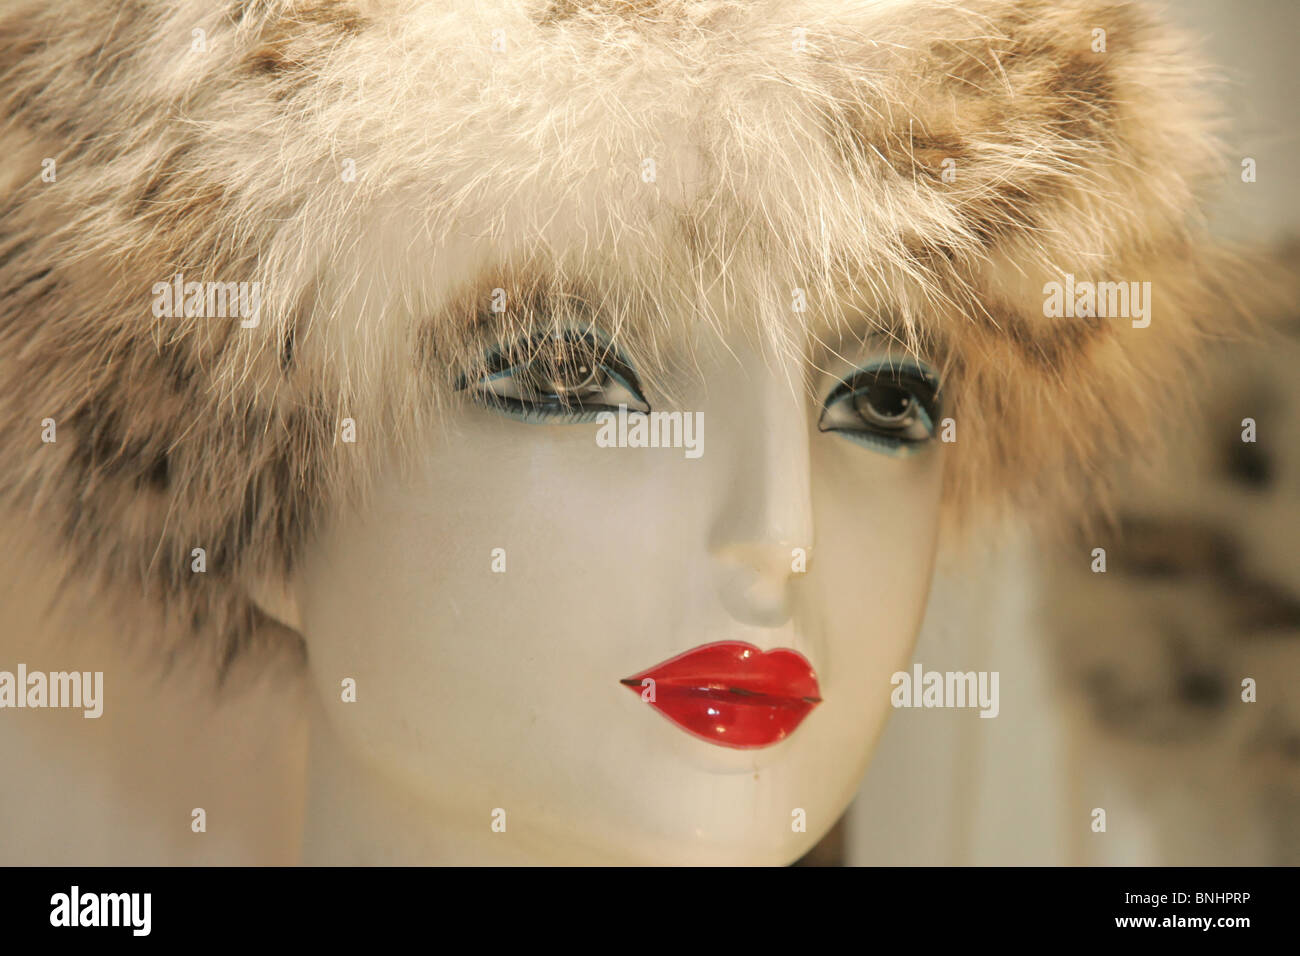 Manichino Visualizza dettaglio della testa della superficie di cappuccio di pelliccia hat luxury store shop shopping window decorazione dei burattini Foto Stock